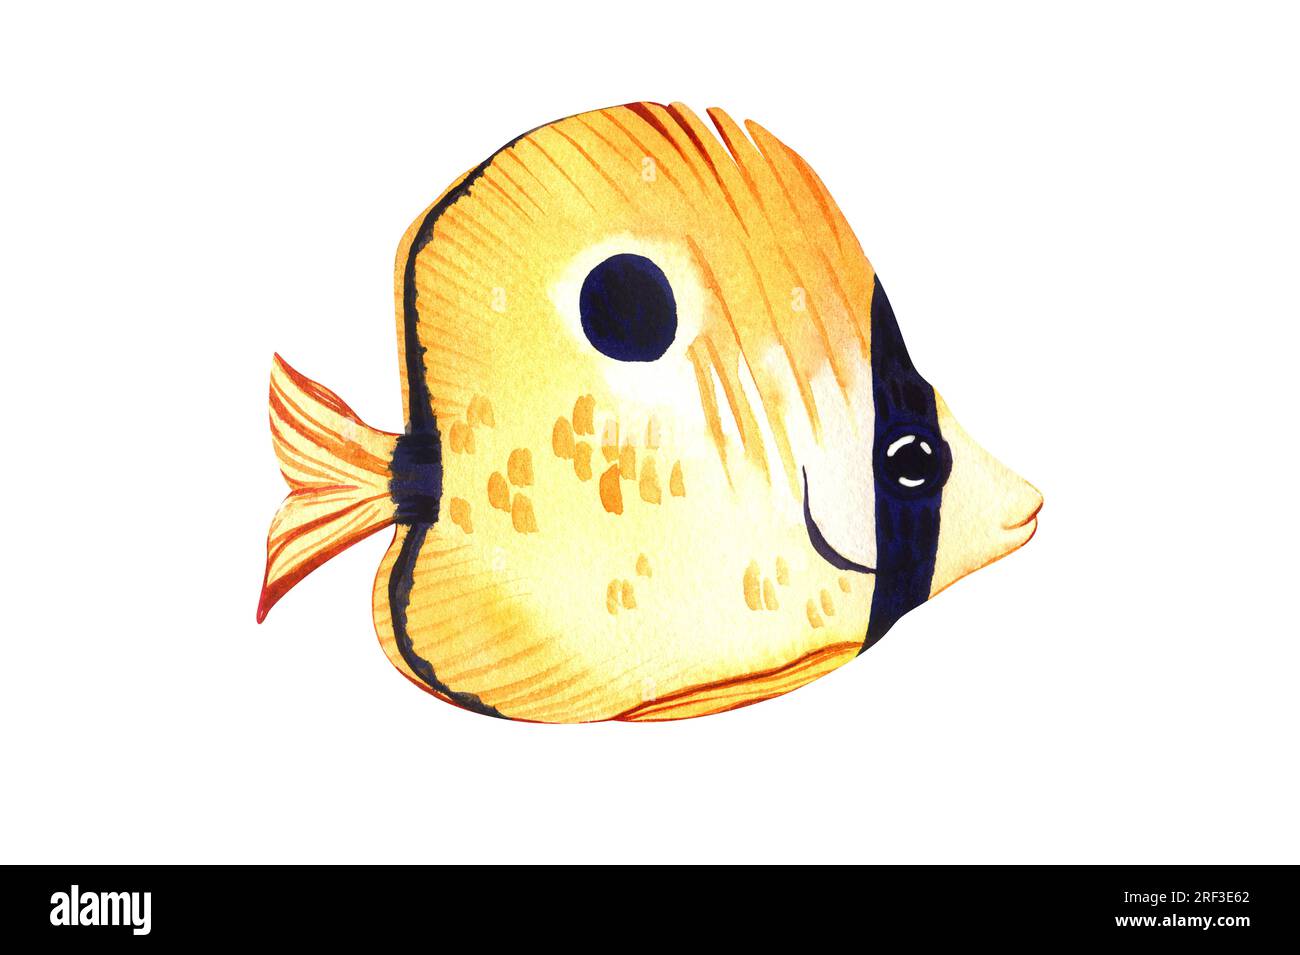 Aquarelle de poisson marin tropical jaune larme butterflyfish. Dessin à la main illustration d'animaux d'aquarium de dessin animé isolé sur fond blanc. Concept Banque D'Images